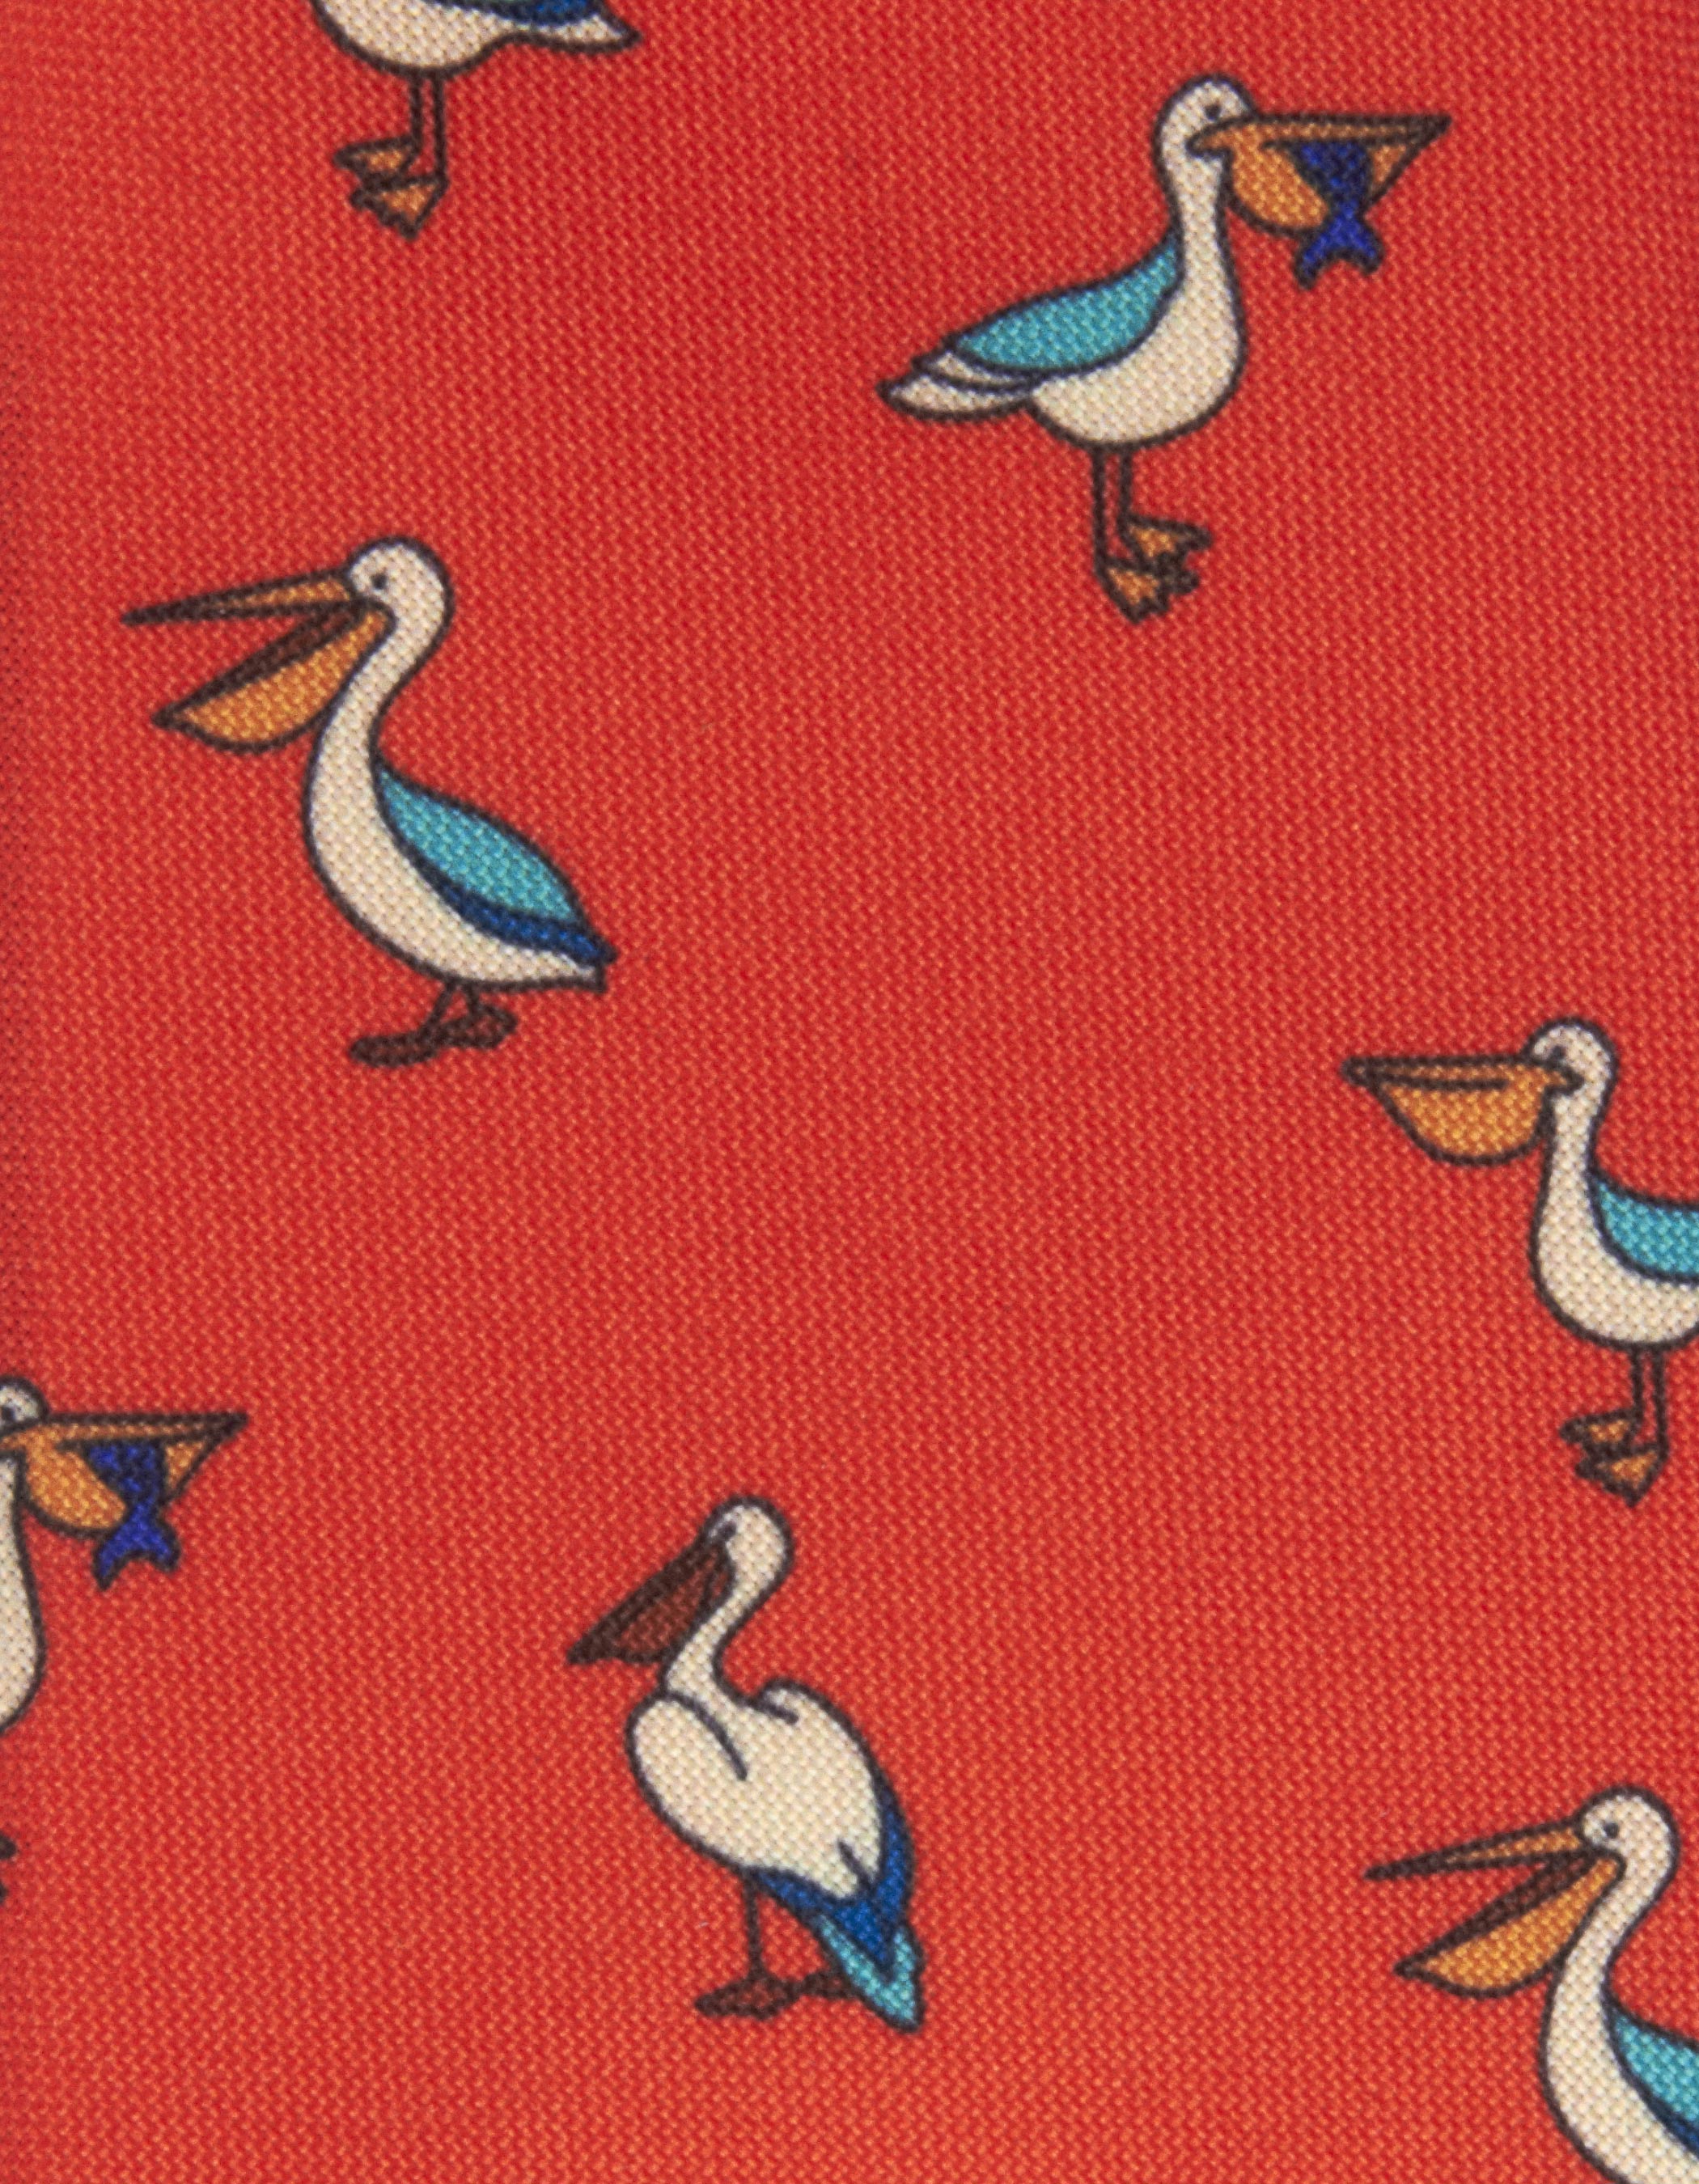 Red pelican tie 1